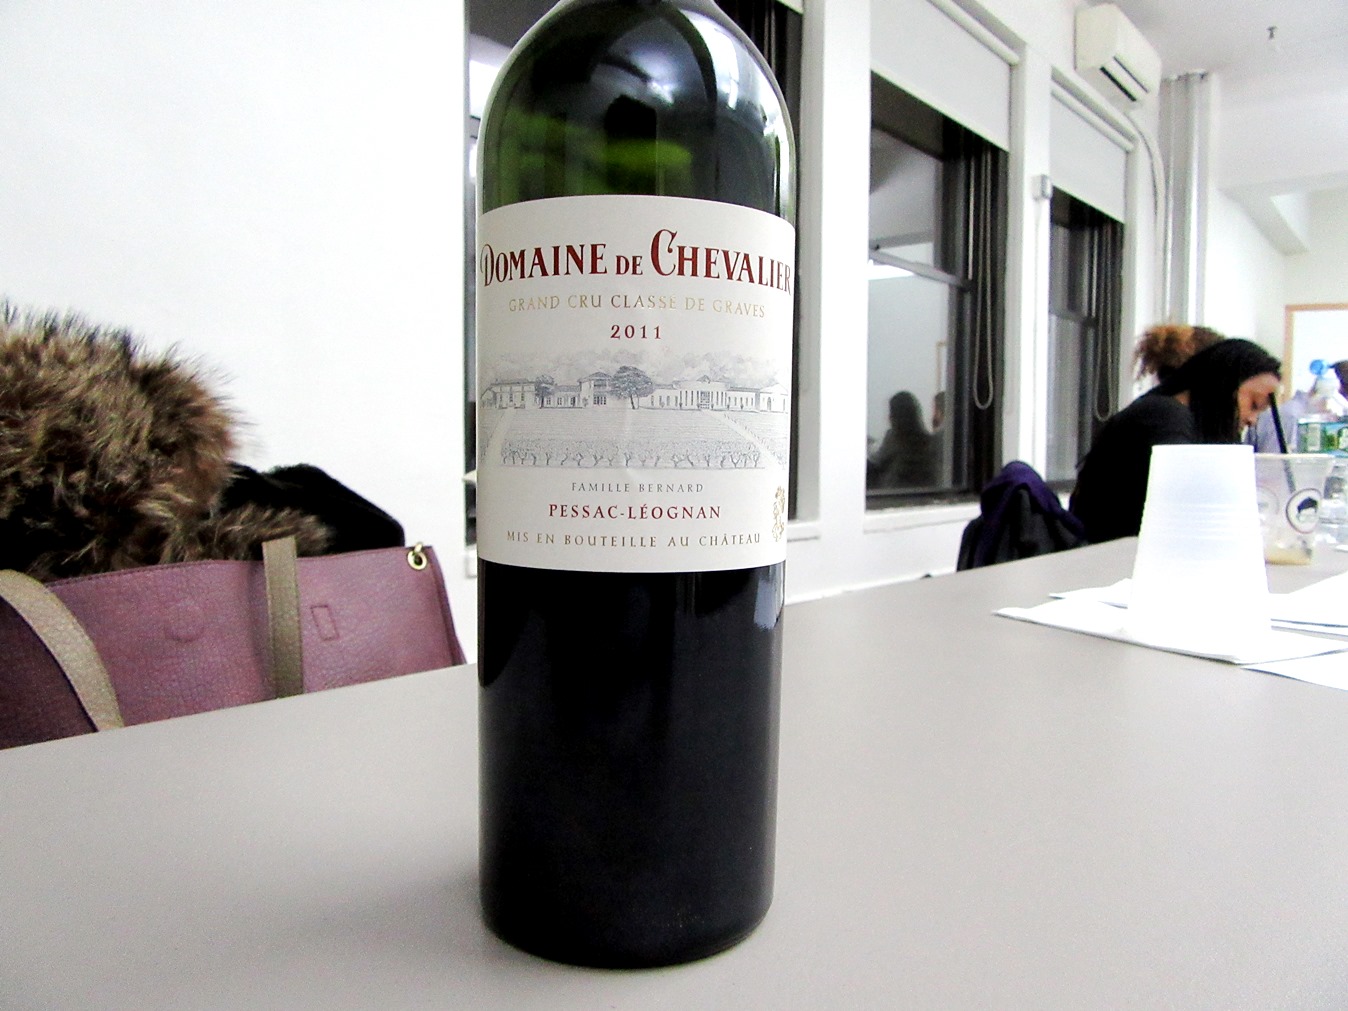 Domaine de Chevalier, Pessac-Léognan Grand Cru Classé de Graves 2011, France, Wine Casual